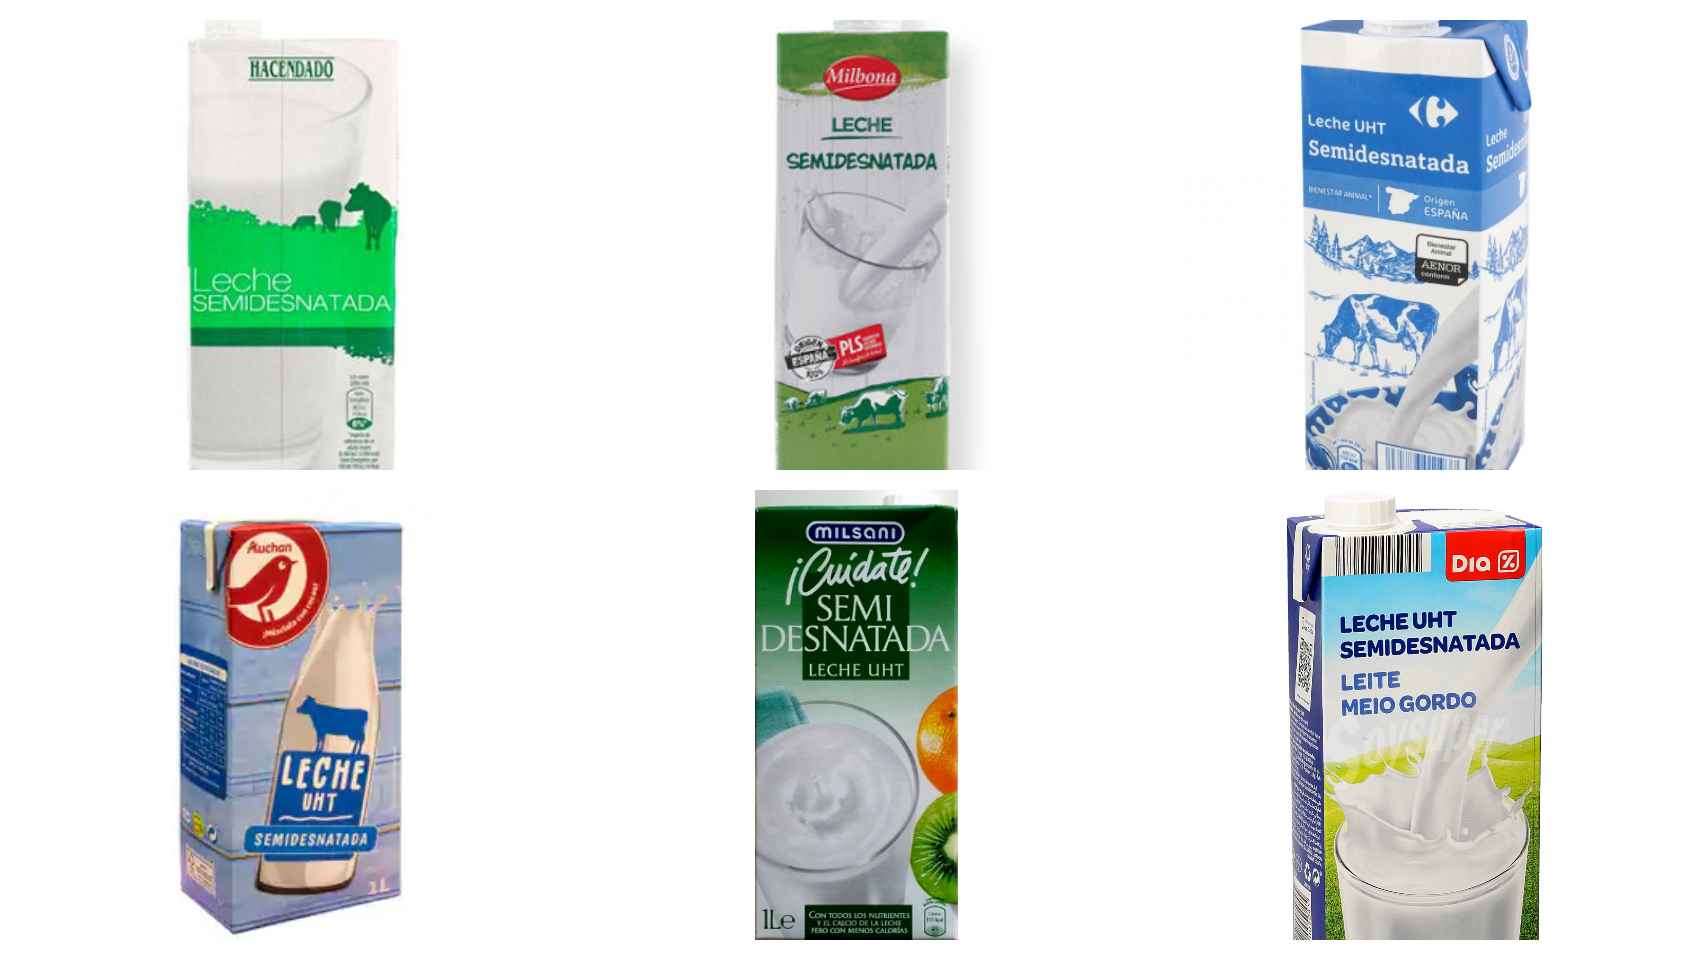 De arriba a abajo y de izquierda a derecha: la leche semidesnatada de Mercadona, Lidl, Carrefour, Alcampo, Aldi y Dia.